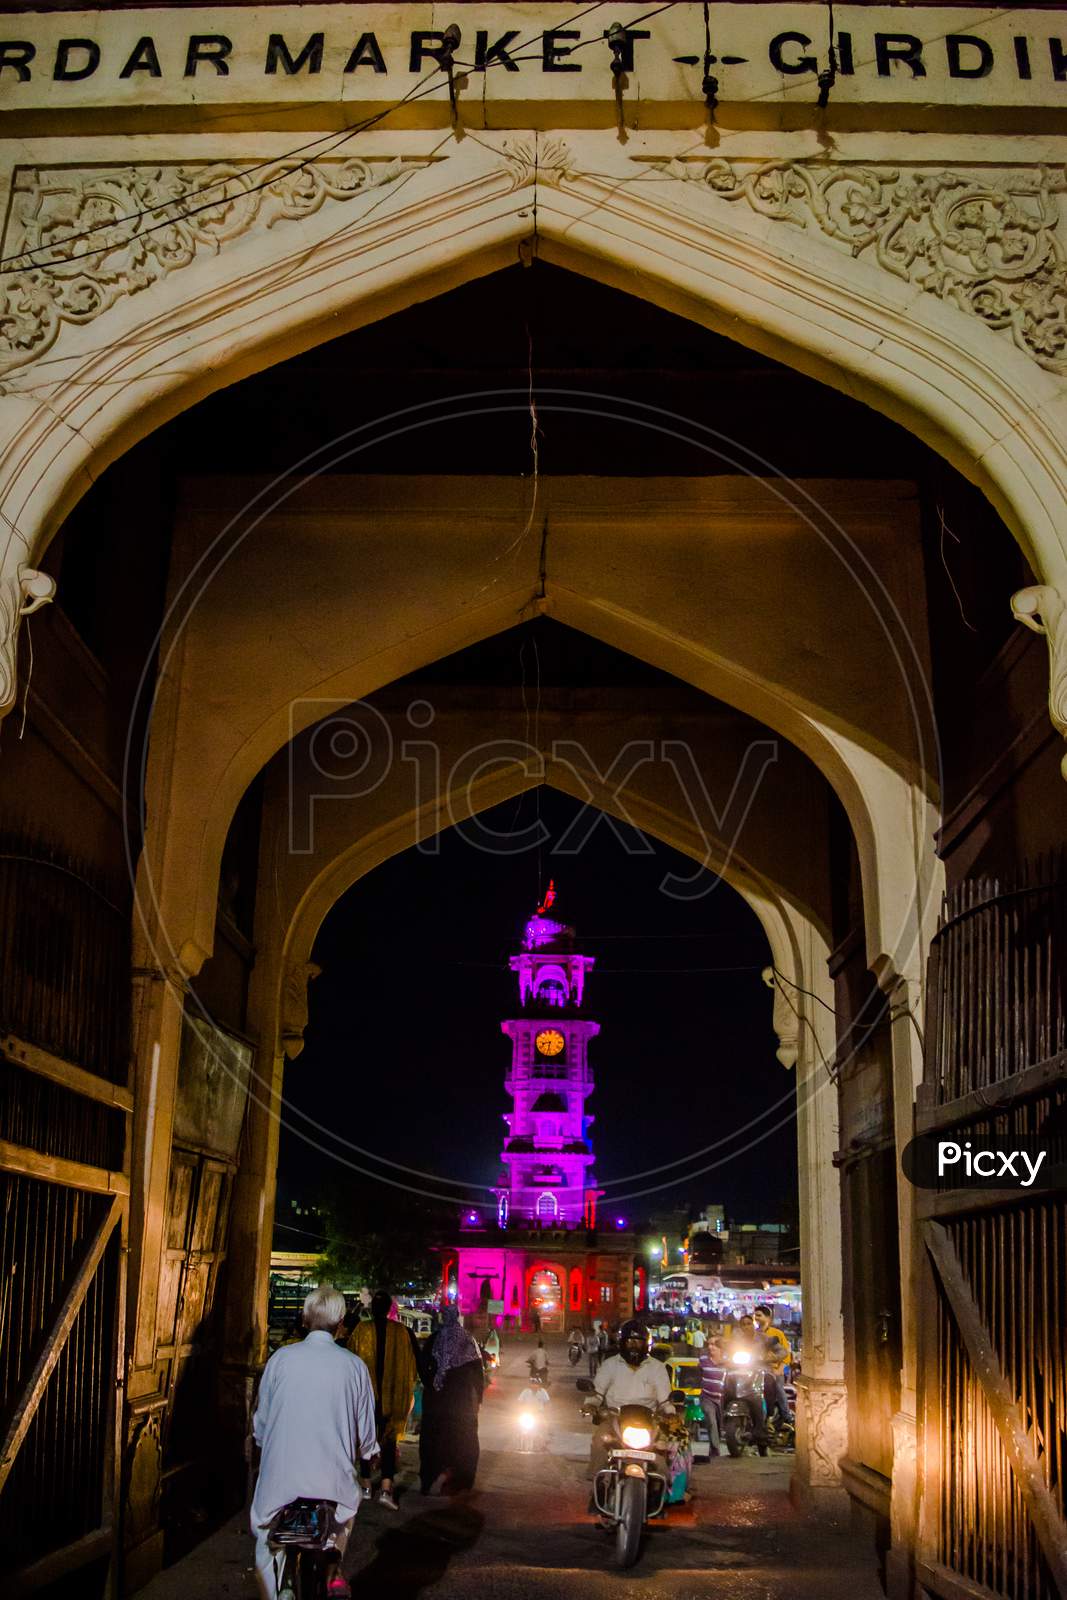 Ghanta Ghar (Clock Tower) & Sadar Market Jodhpur Rajasthan